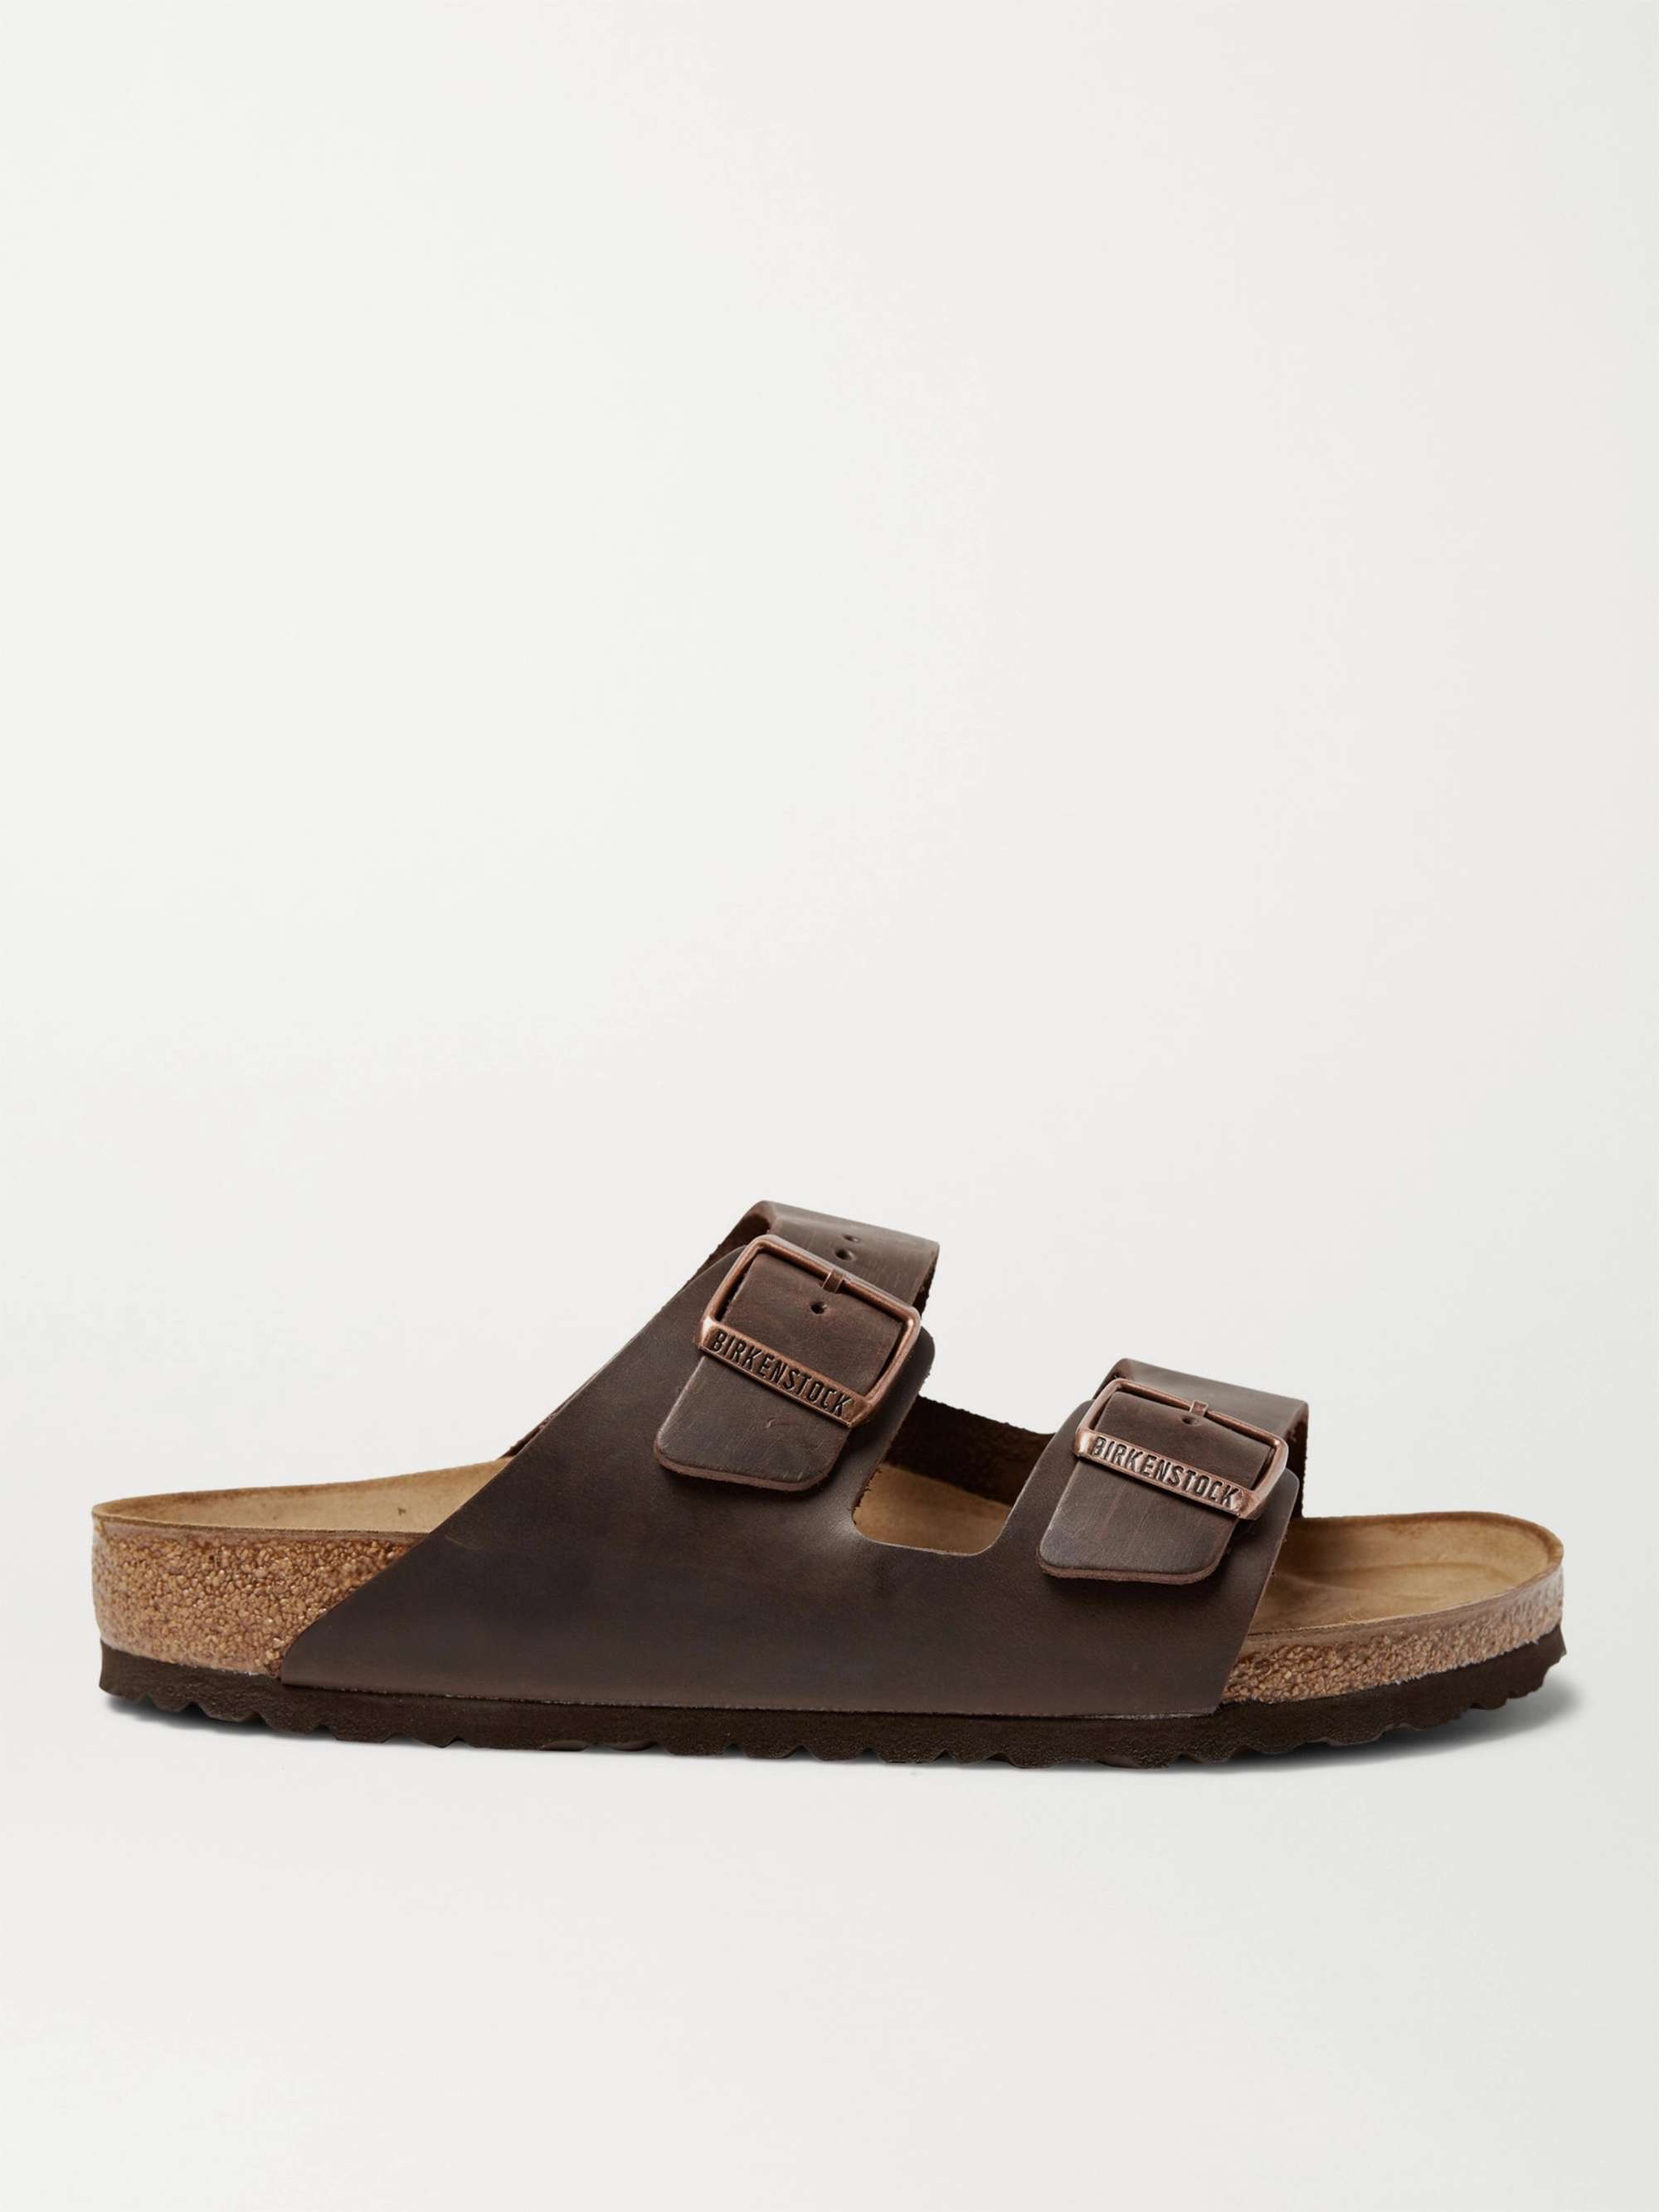 Cosmic Vedligeholdelse Uberettiget BIRKENSTOCK Arizona Oiled-Leather Sandals for Men | MR PORTER